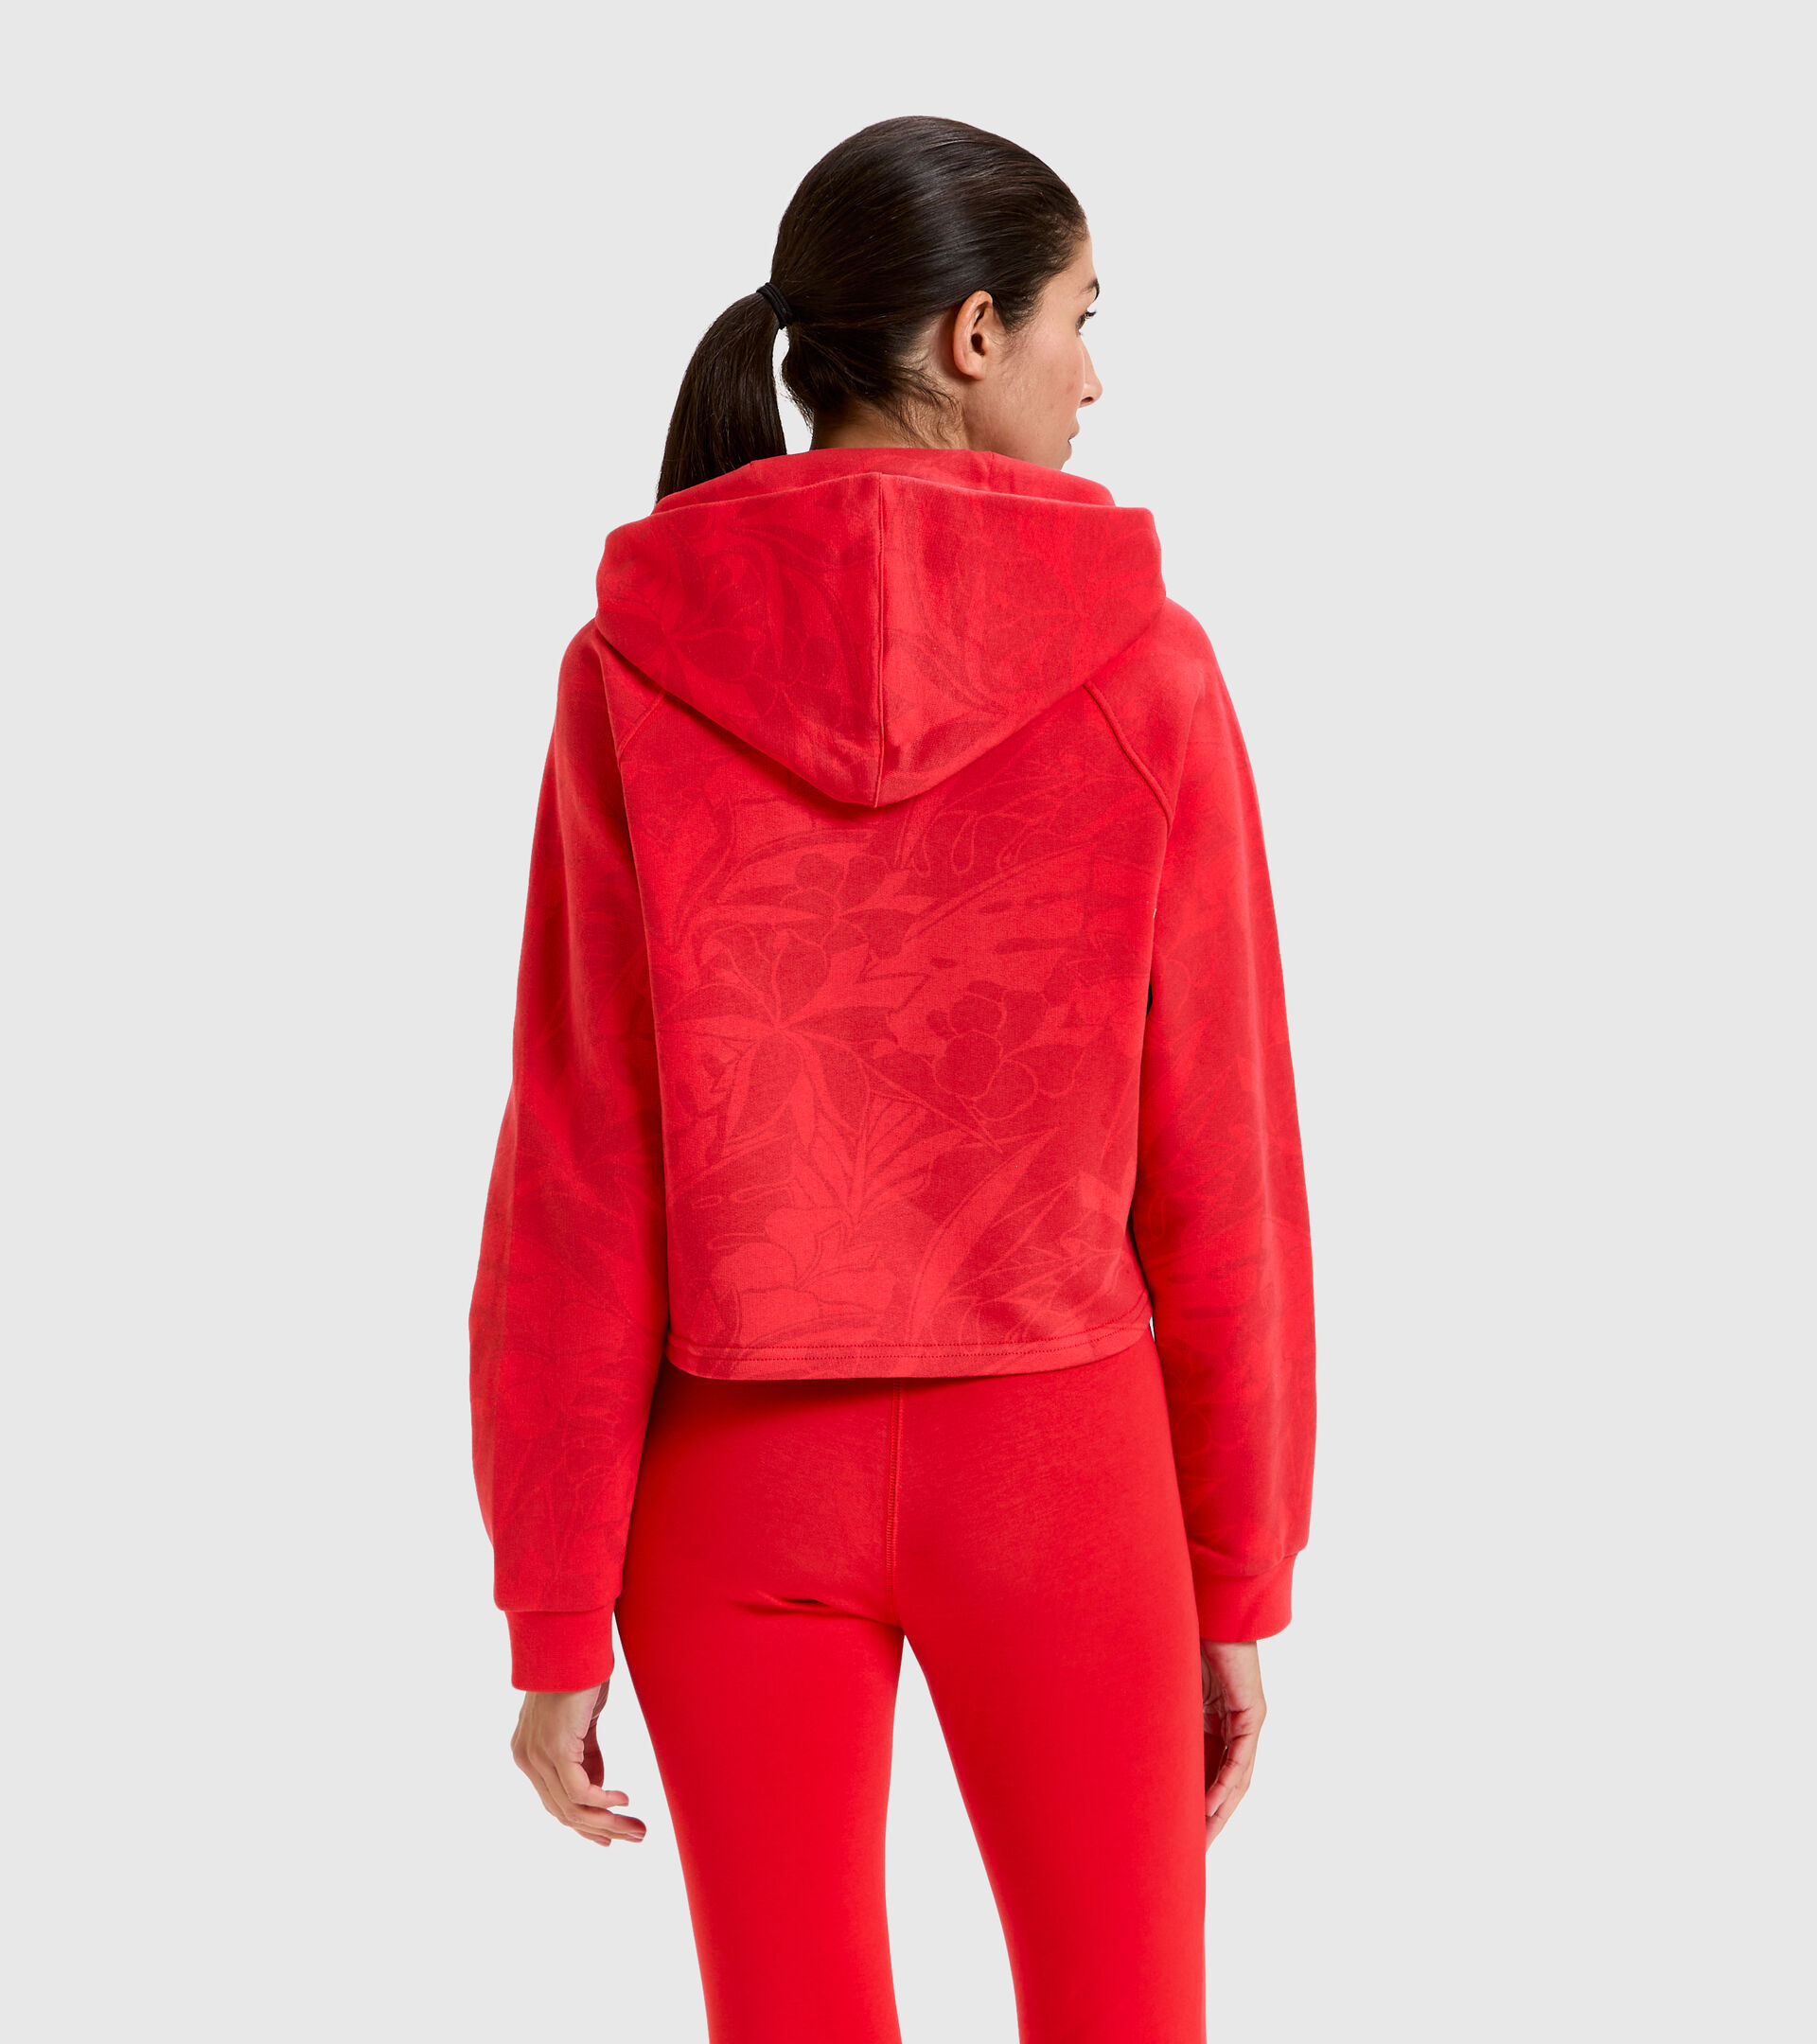 Cropped Cotton hoodie - Women L. HOODIE CROP MANIFESTO POPPY RED - Diadora